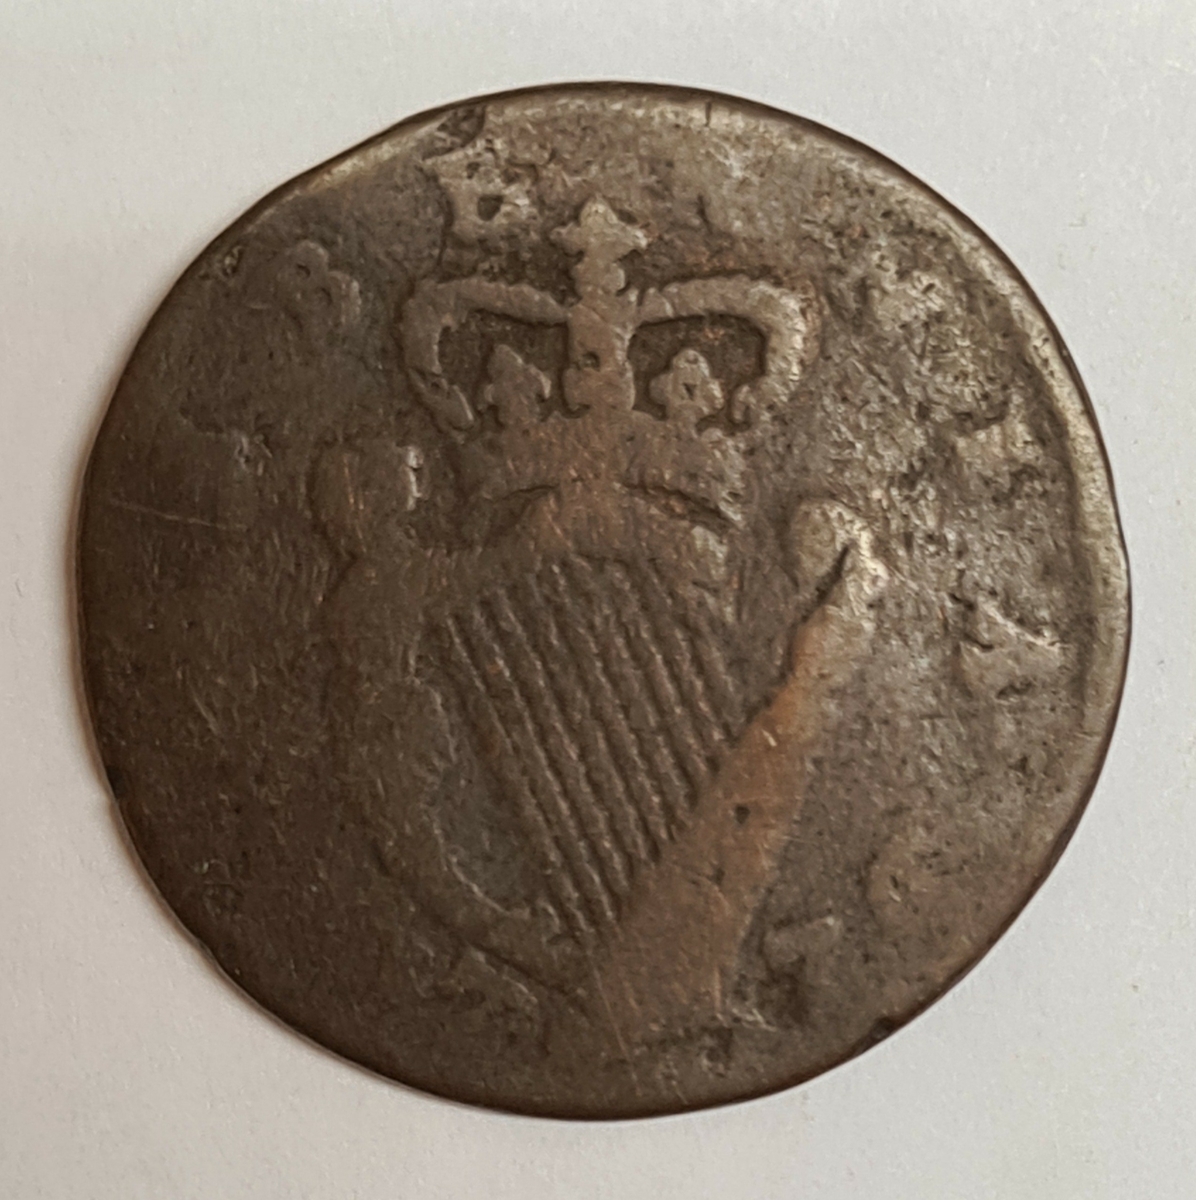 Två mynt från Storbritanien.
Penny, 1799
Penny, 176?